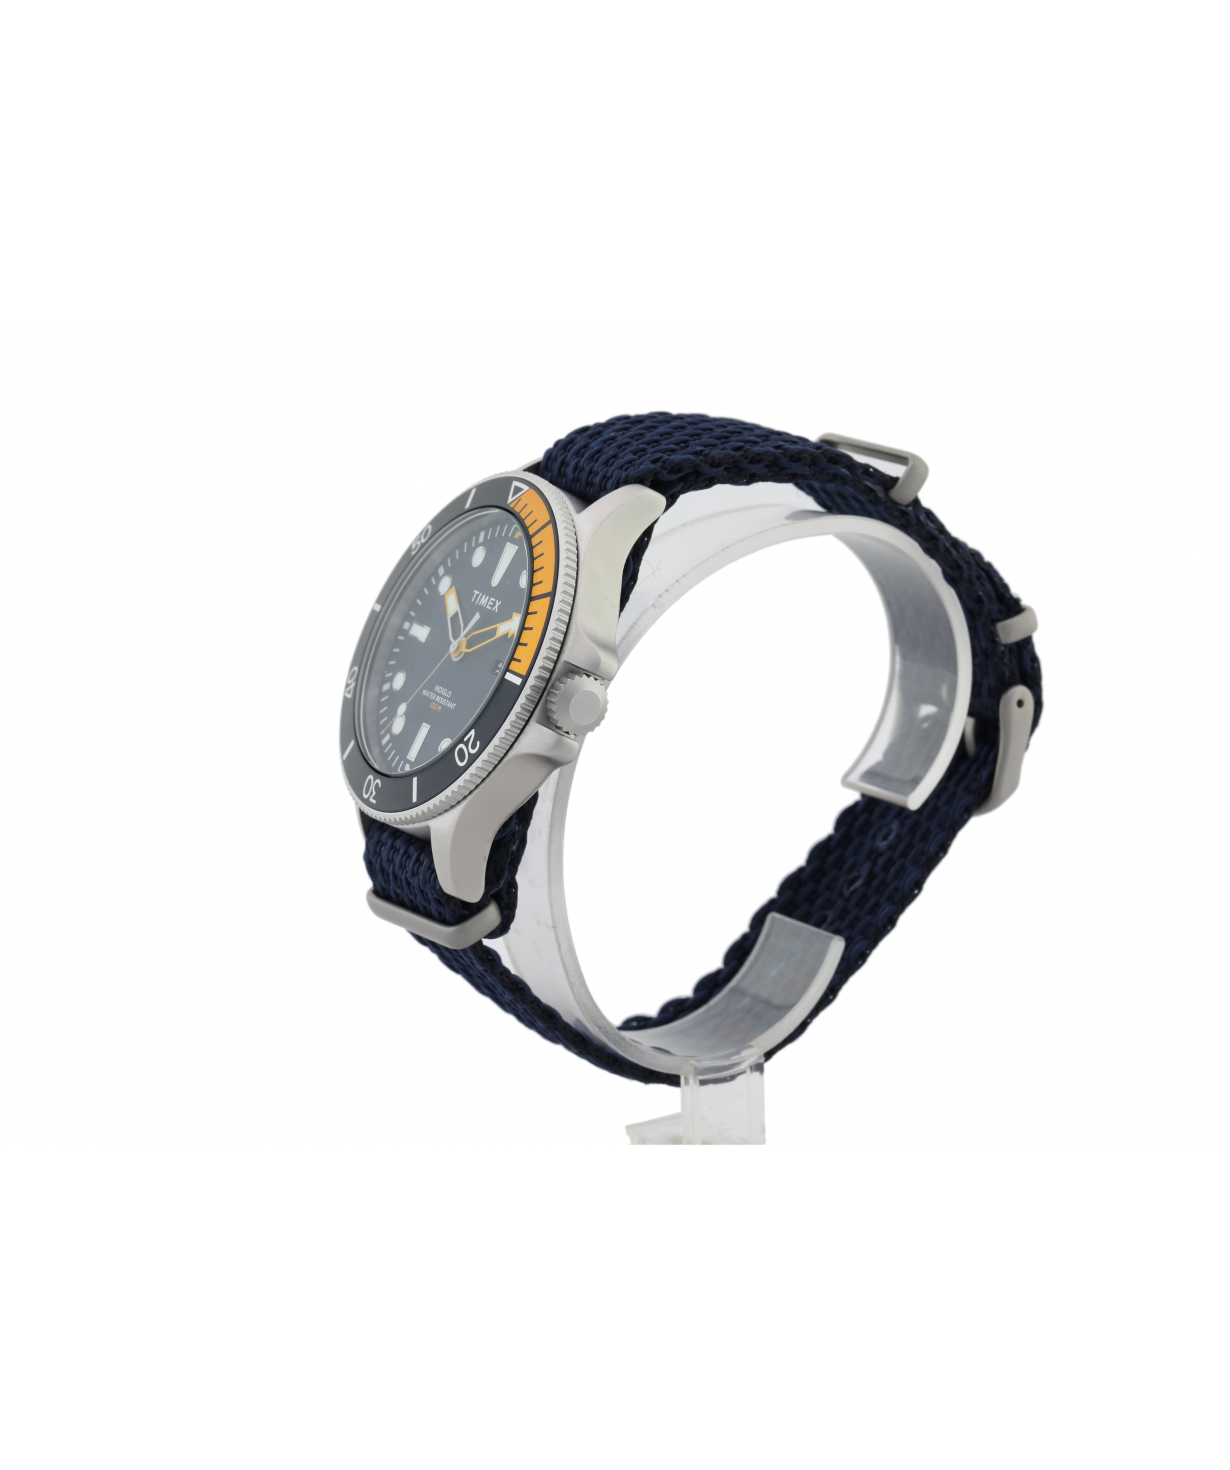 Ժամացույց  «Timex» ձեռքի TW2T30400